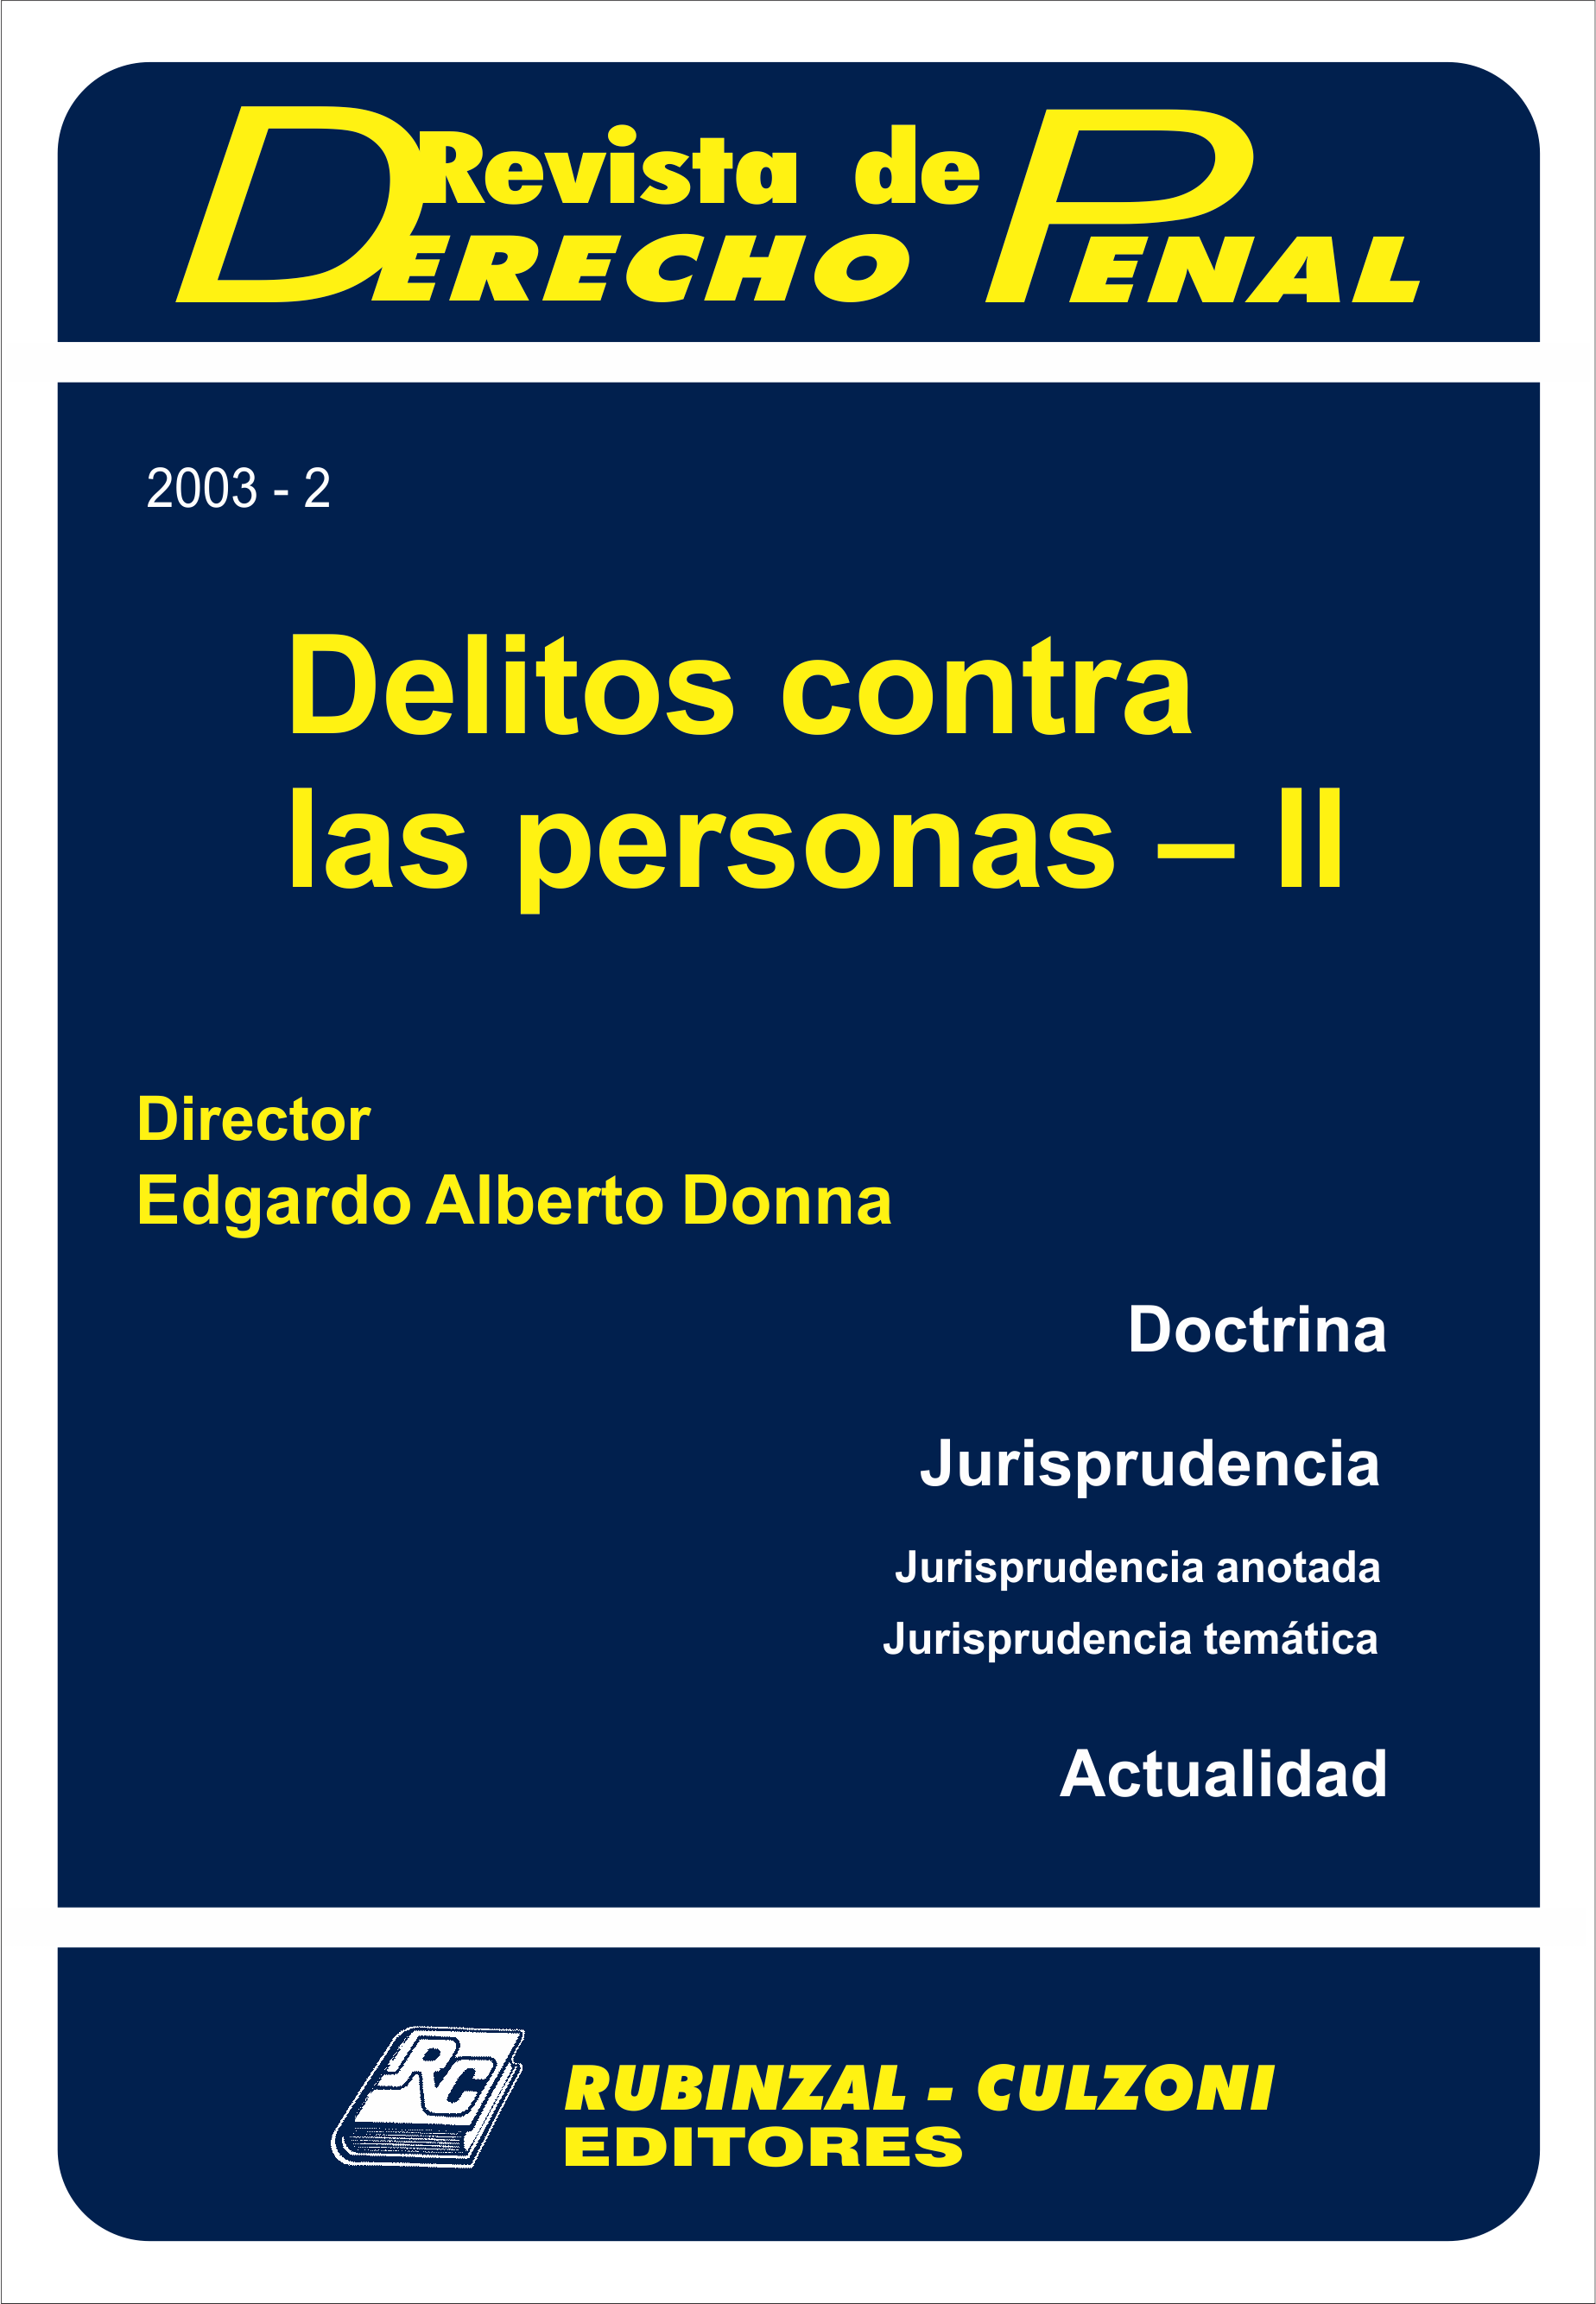 Revista de Derecho Penal - Delitos contra las personas - II.